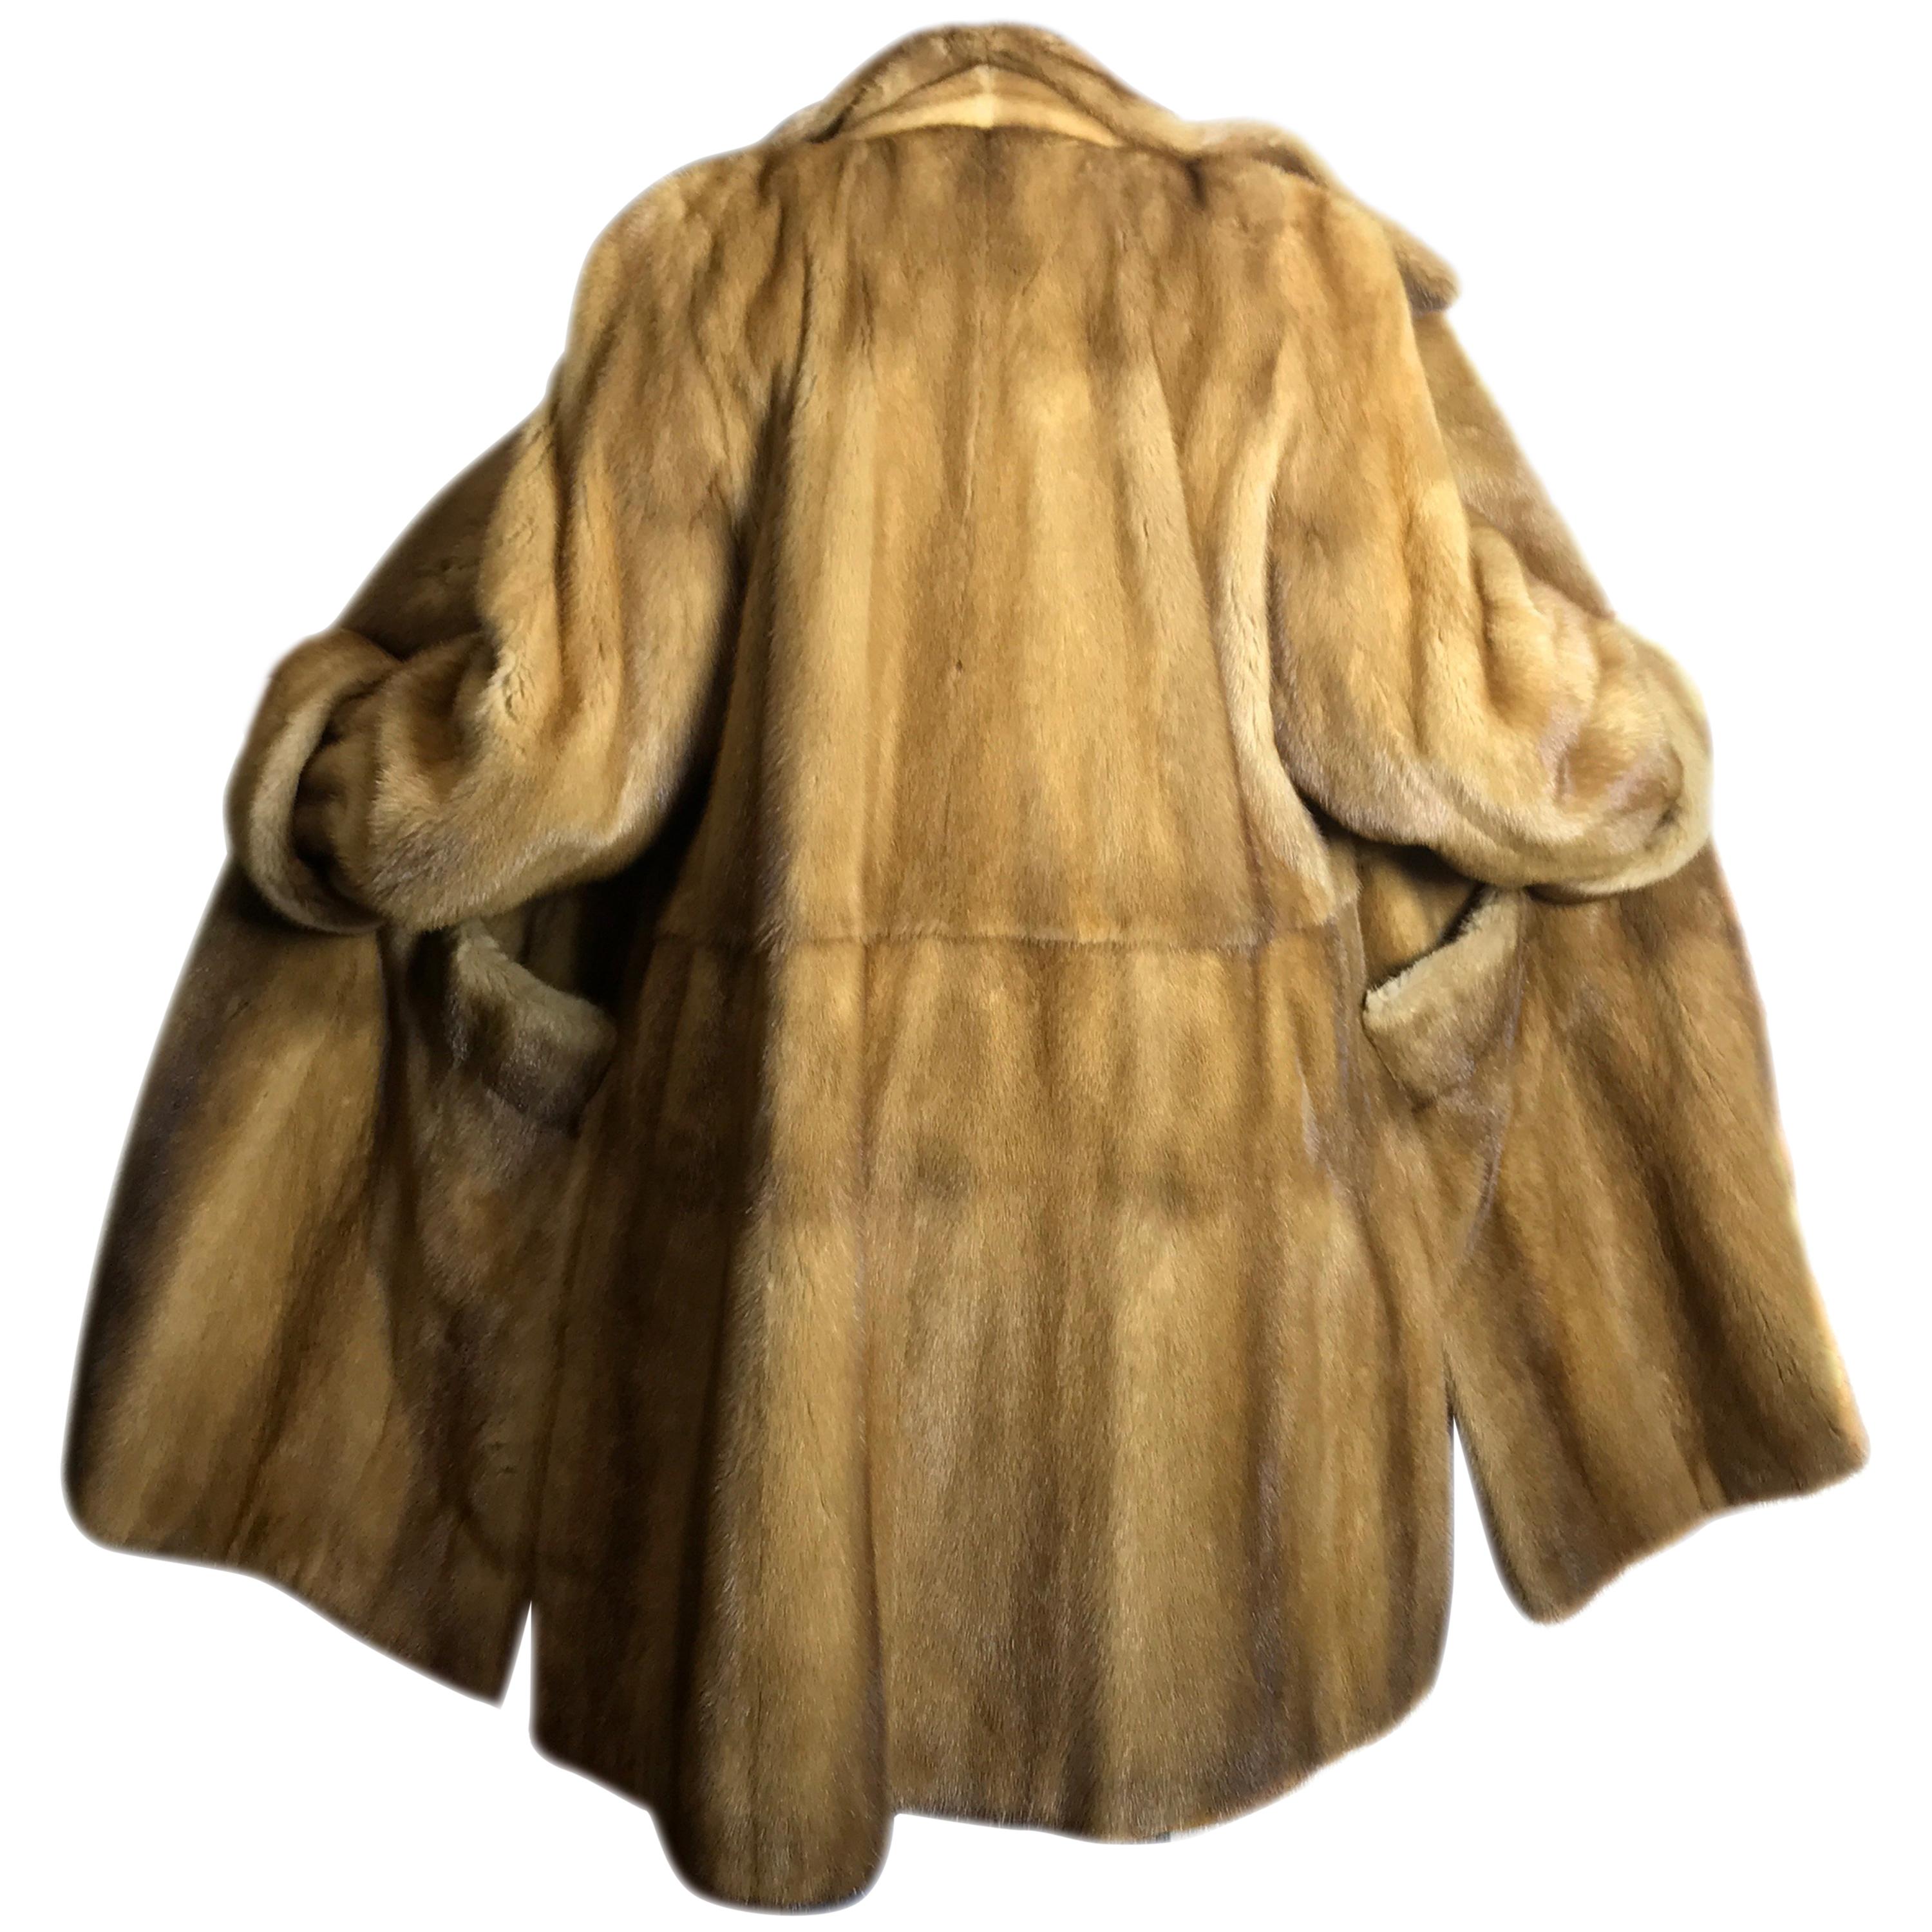  Saga mink silk fur 3/4 jacket / coat. Tan/beige. Gold mink. (9) For Sale